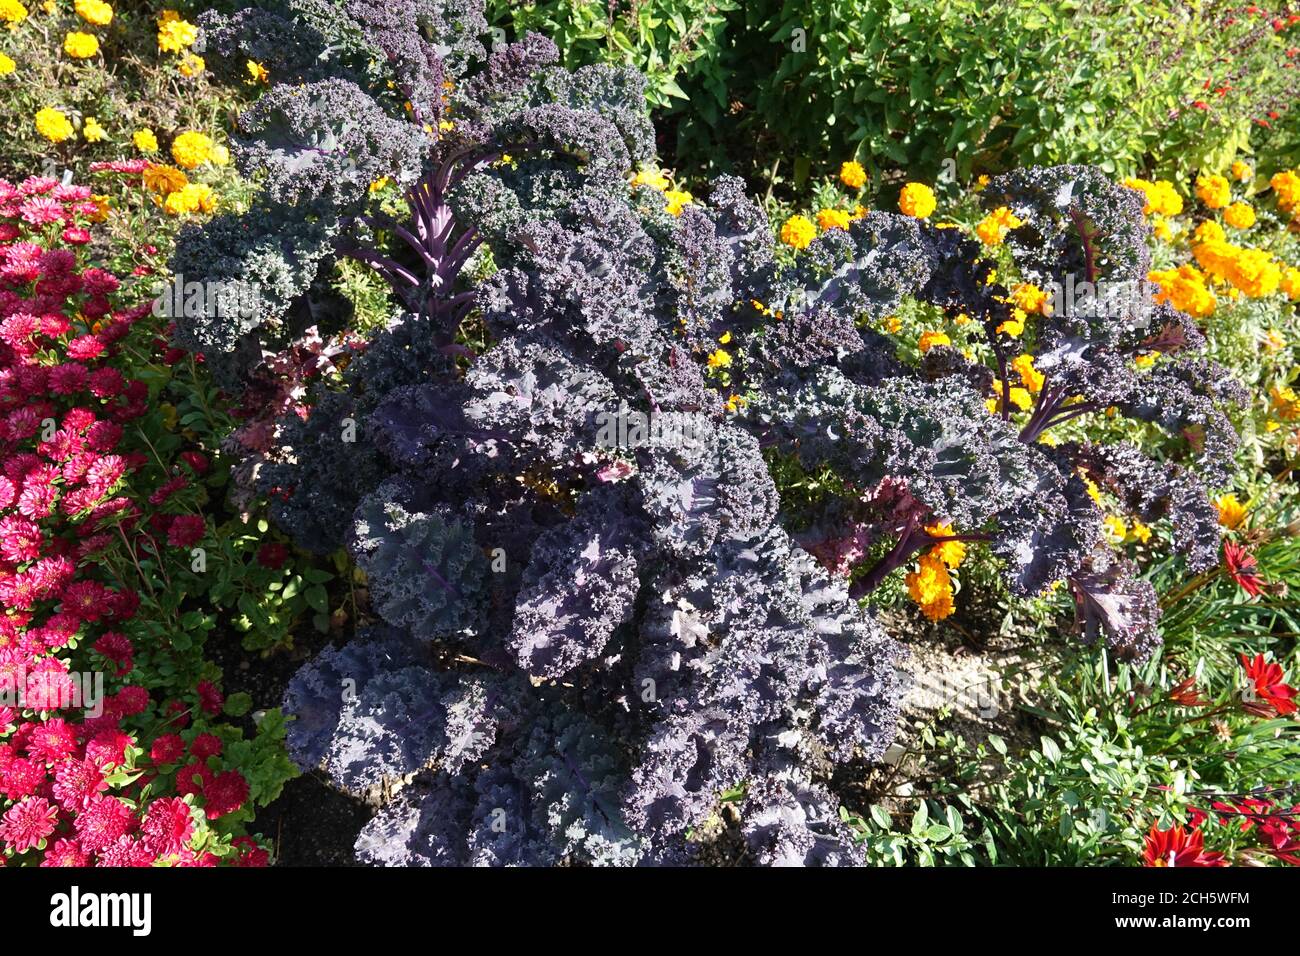 Décoratif Violet Kale Brassica oleracea 'Redbor' Flowerbed Garden border septembre été Flower bed plants multicolores fleurs colorées chou Banque D'Images